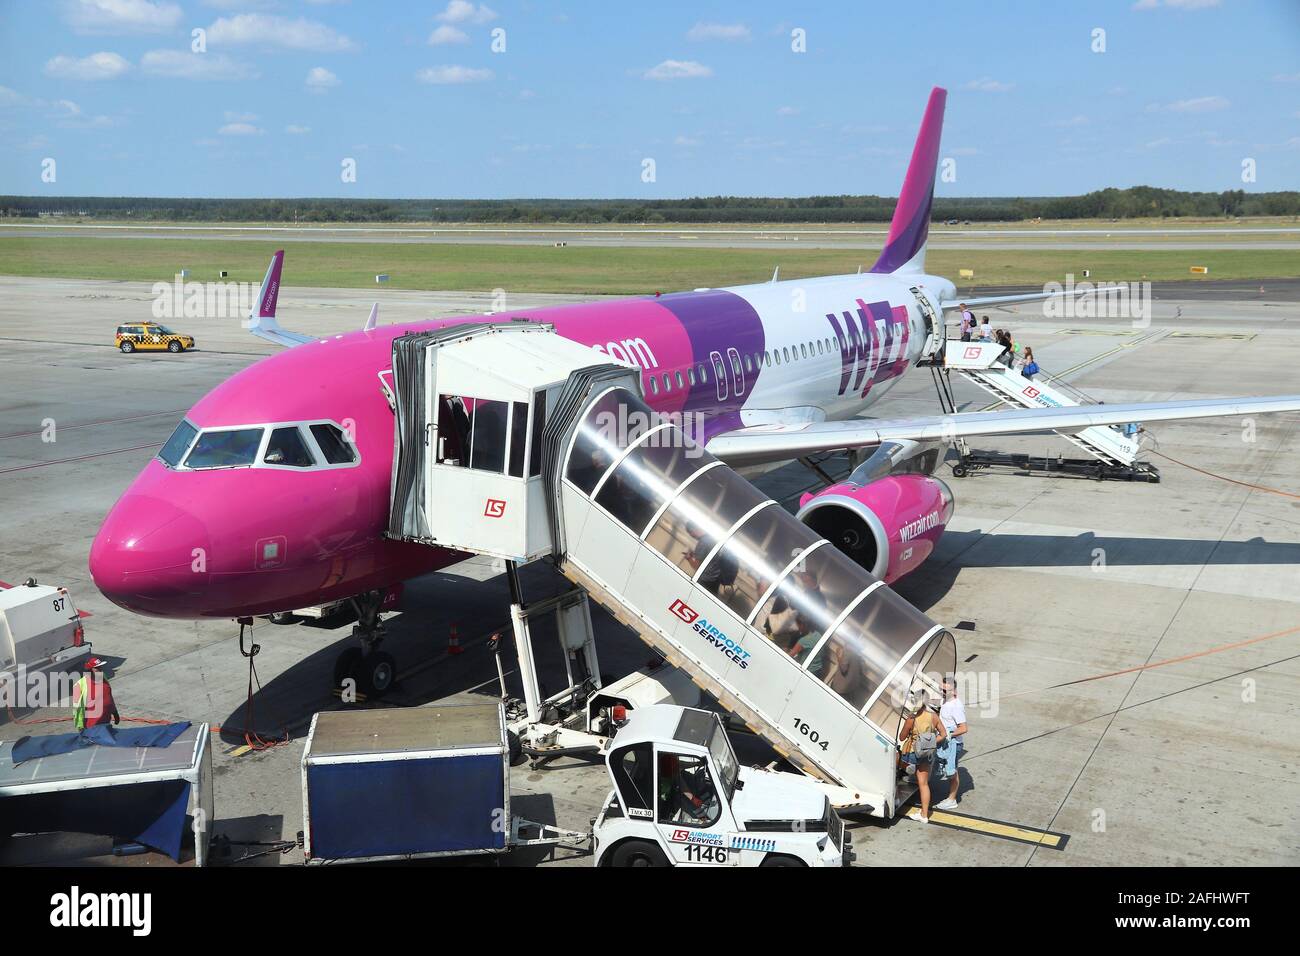 KATOWICE IN POLONIA - Agosto 22, 2018: passeggeri compagnia aerea a basso costo Wizz Air un aeromobile di tipo Airbus A320 a aeroporto Katowice in Polonia. Katowice è il 4. Foto Stock